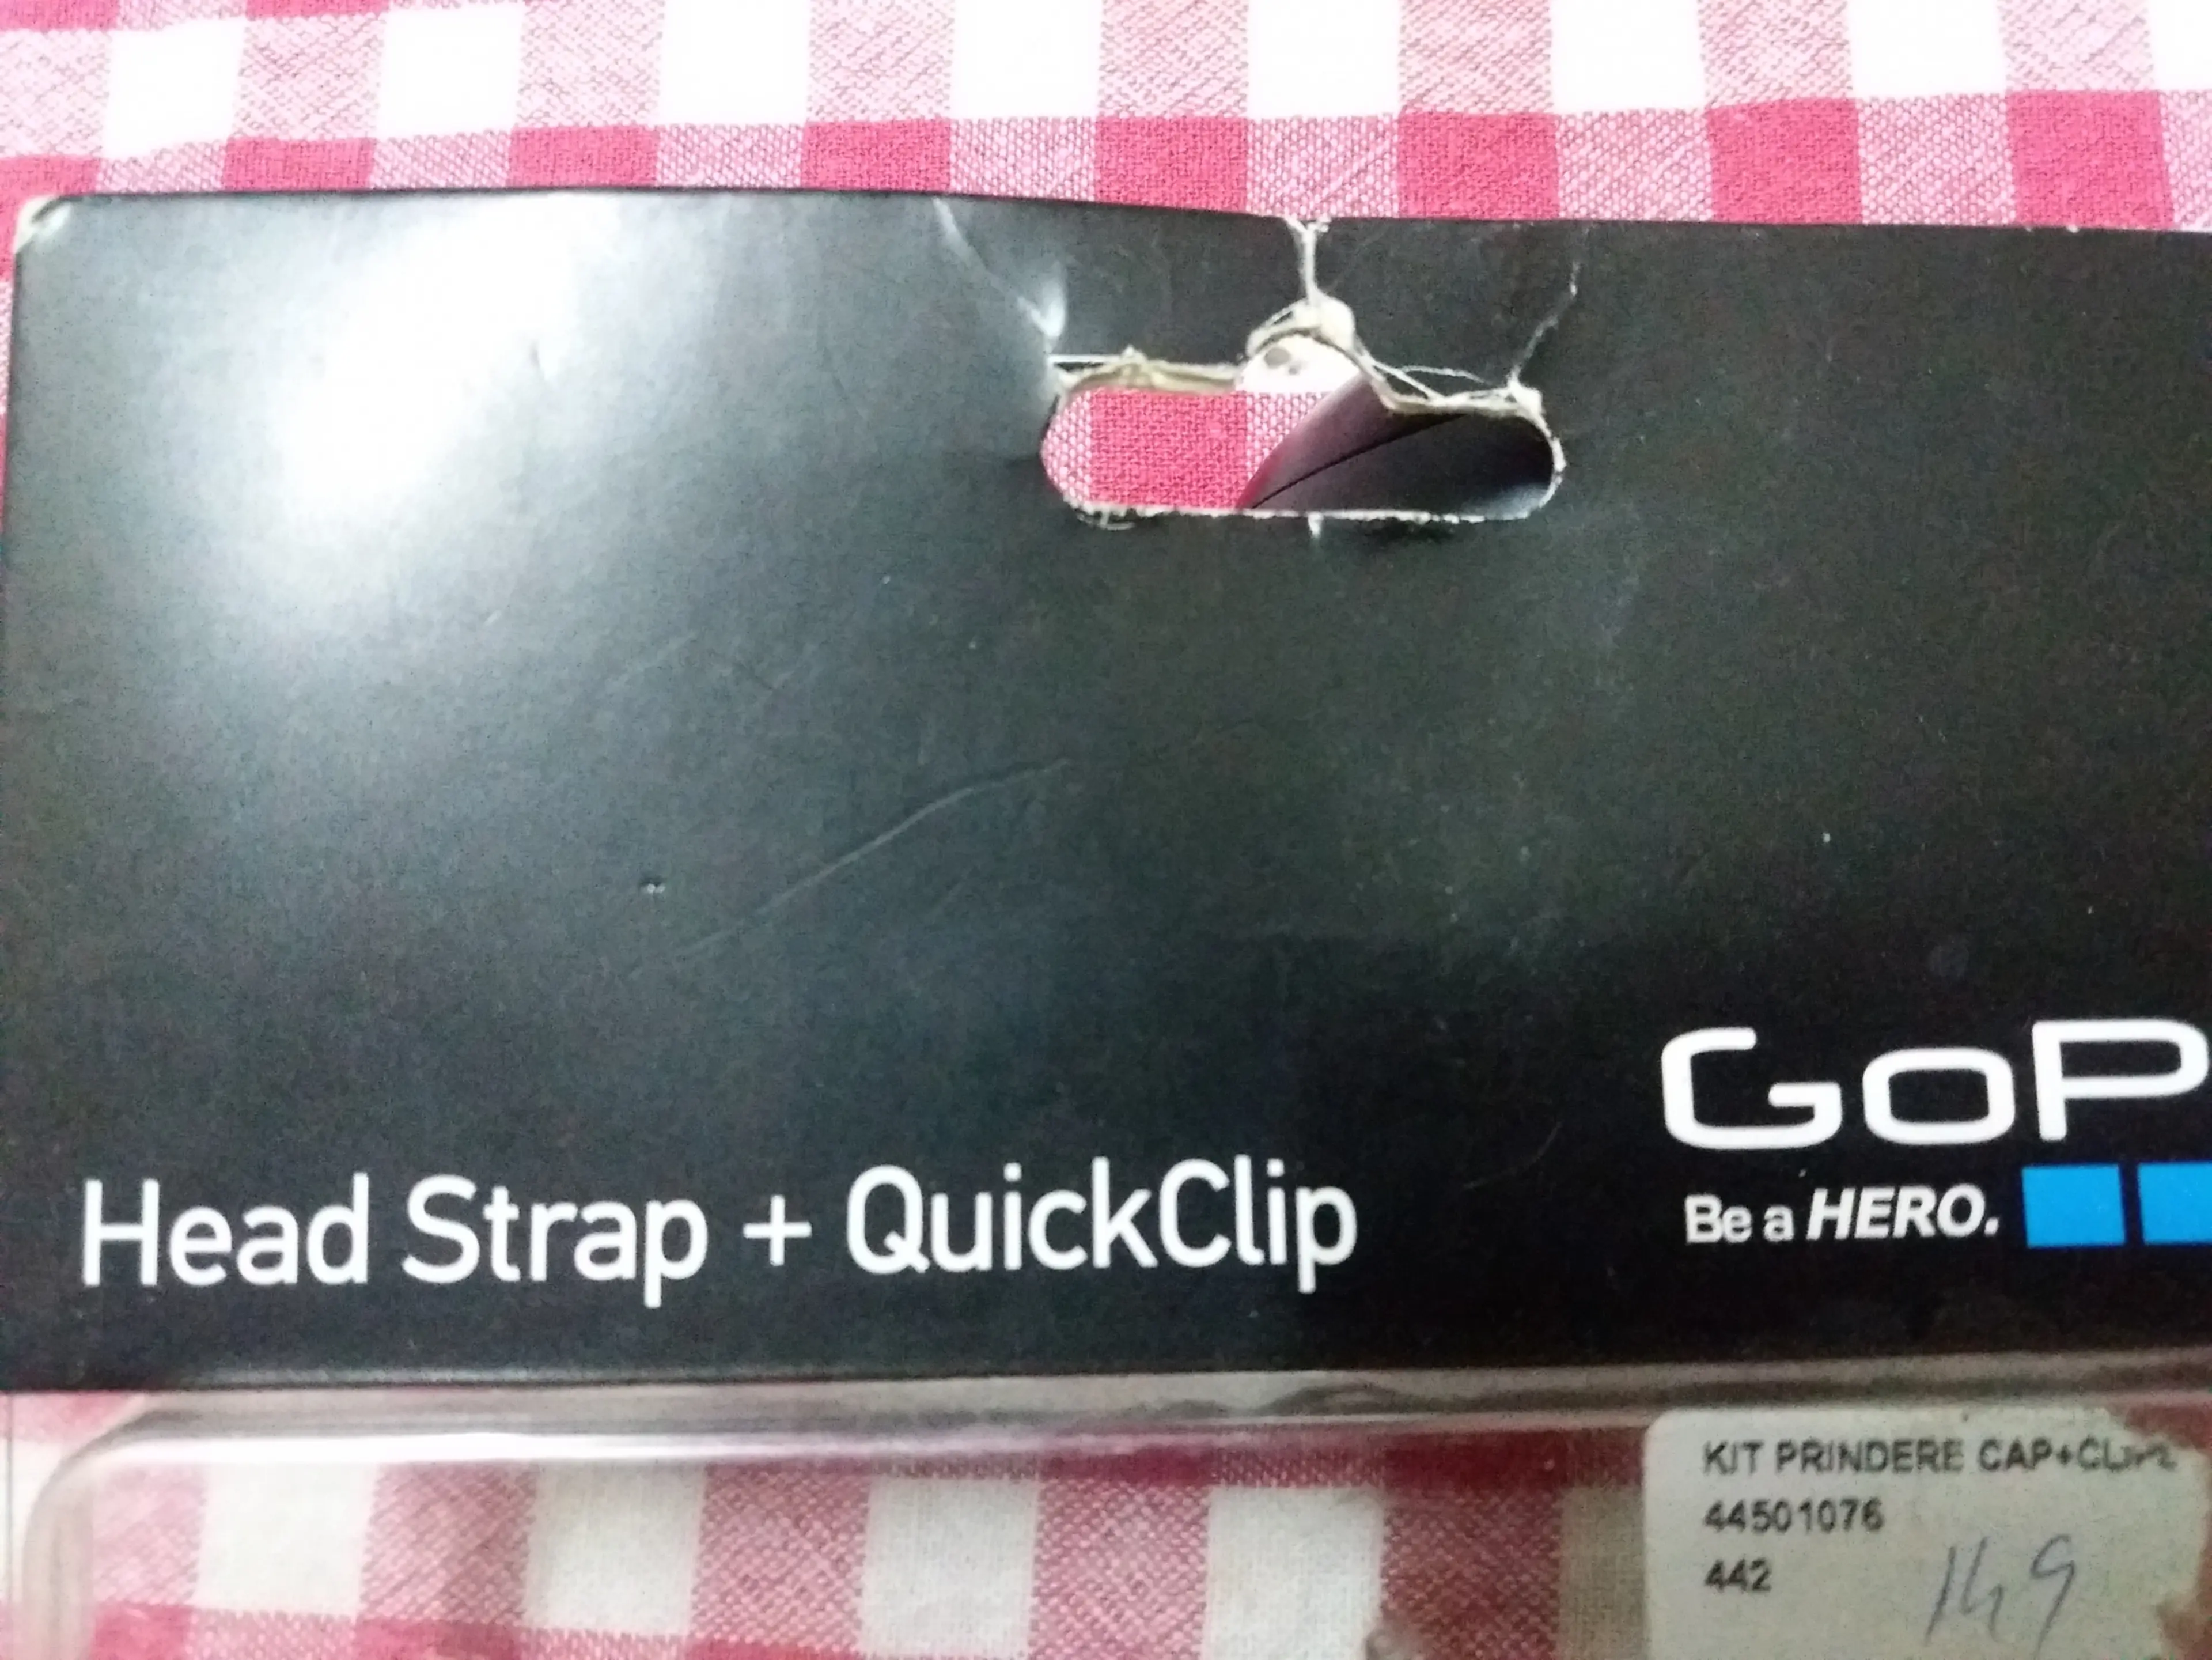 2. GoPro - Head Strap + QuickClip - Ham de cap + clips sapca / curea